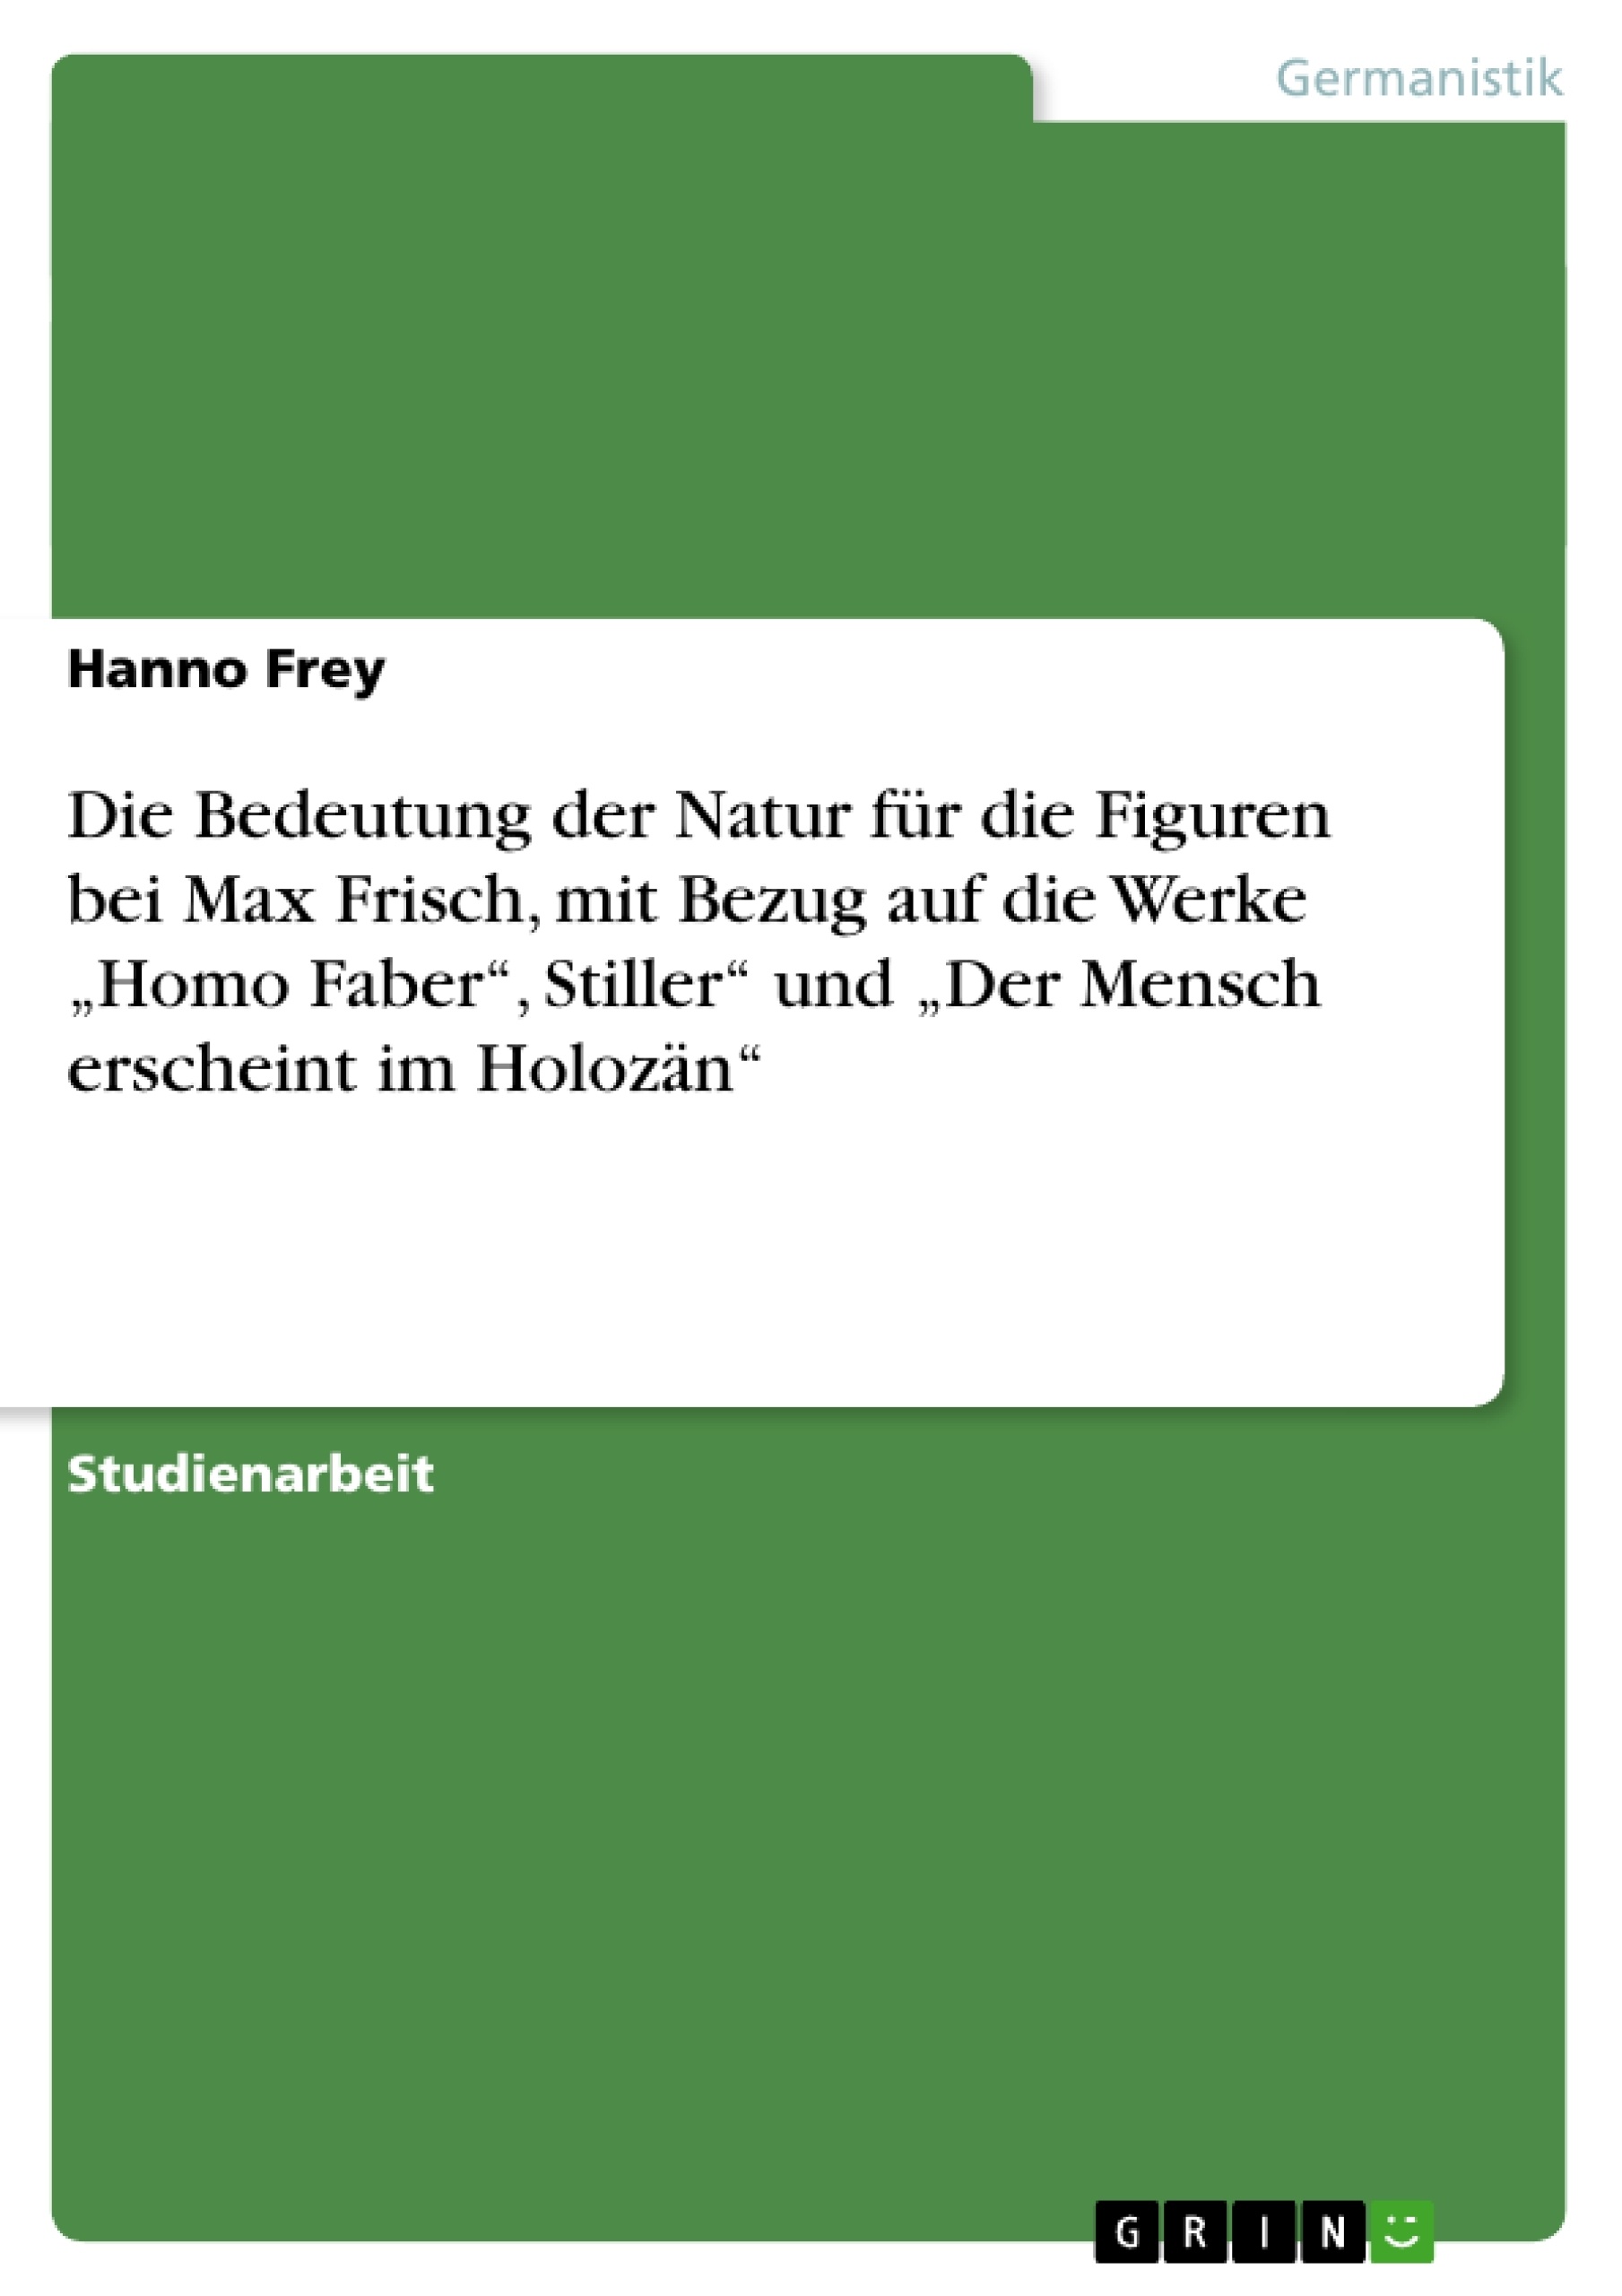 Título: Die Bedeutung der Natur für die Figuren bei Max Frisch, mit Bezug auf die Werke „Homo Faber“, Stiller“ und „Der Mensch erscheint im Holozän“